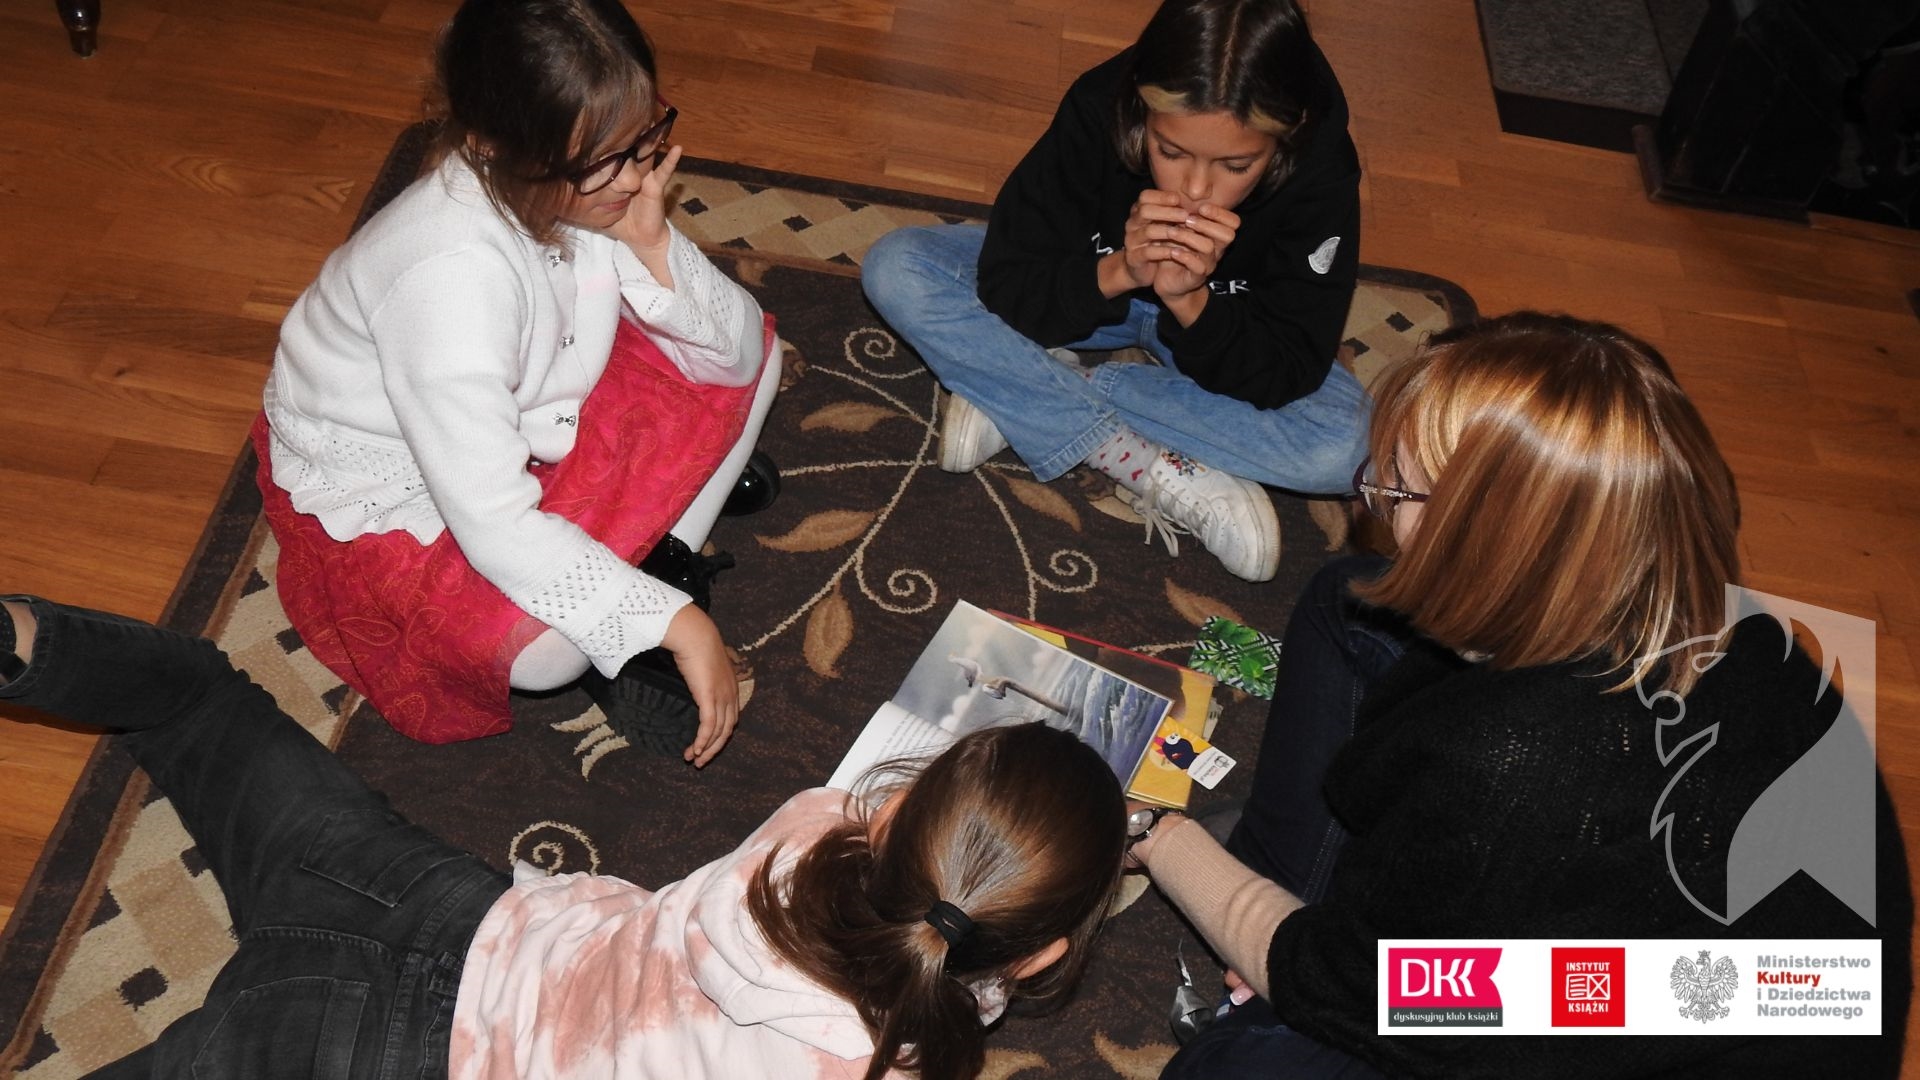 Trójka dzieci oraz moderatorka Dyskusyjnego Klubu Ksiązki siedzą na dywanie. Pośrodku leży otwarta ksiązka.